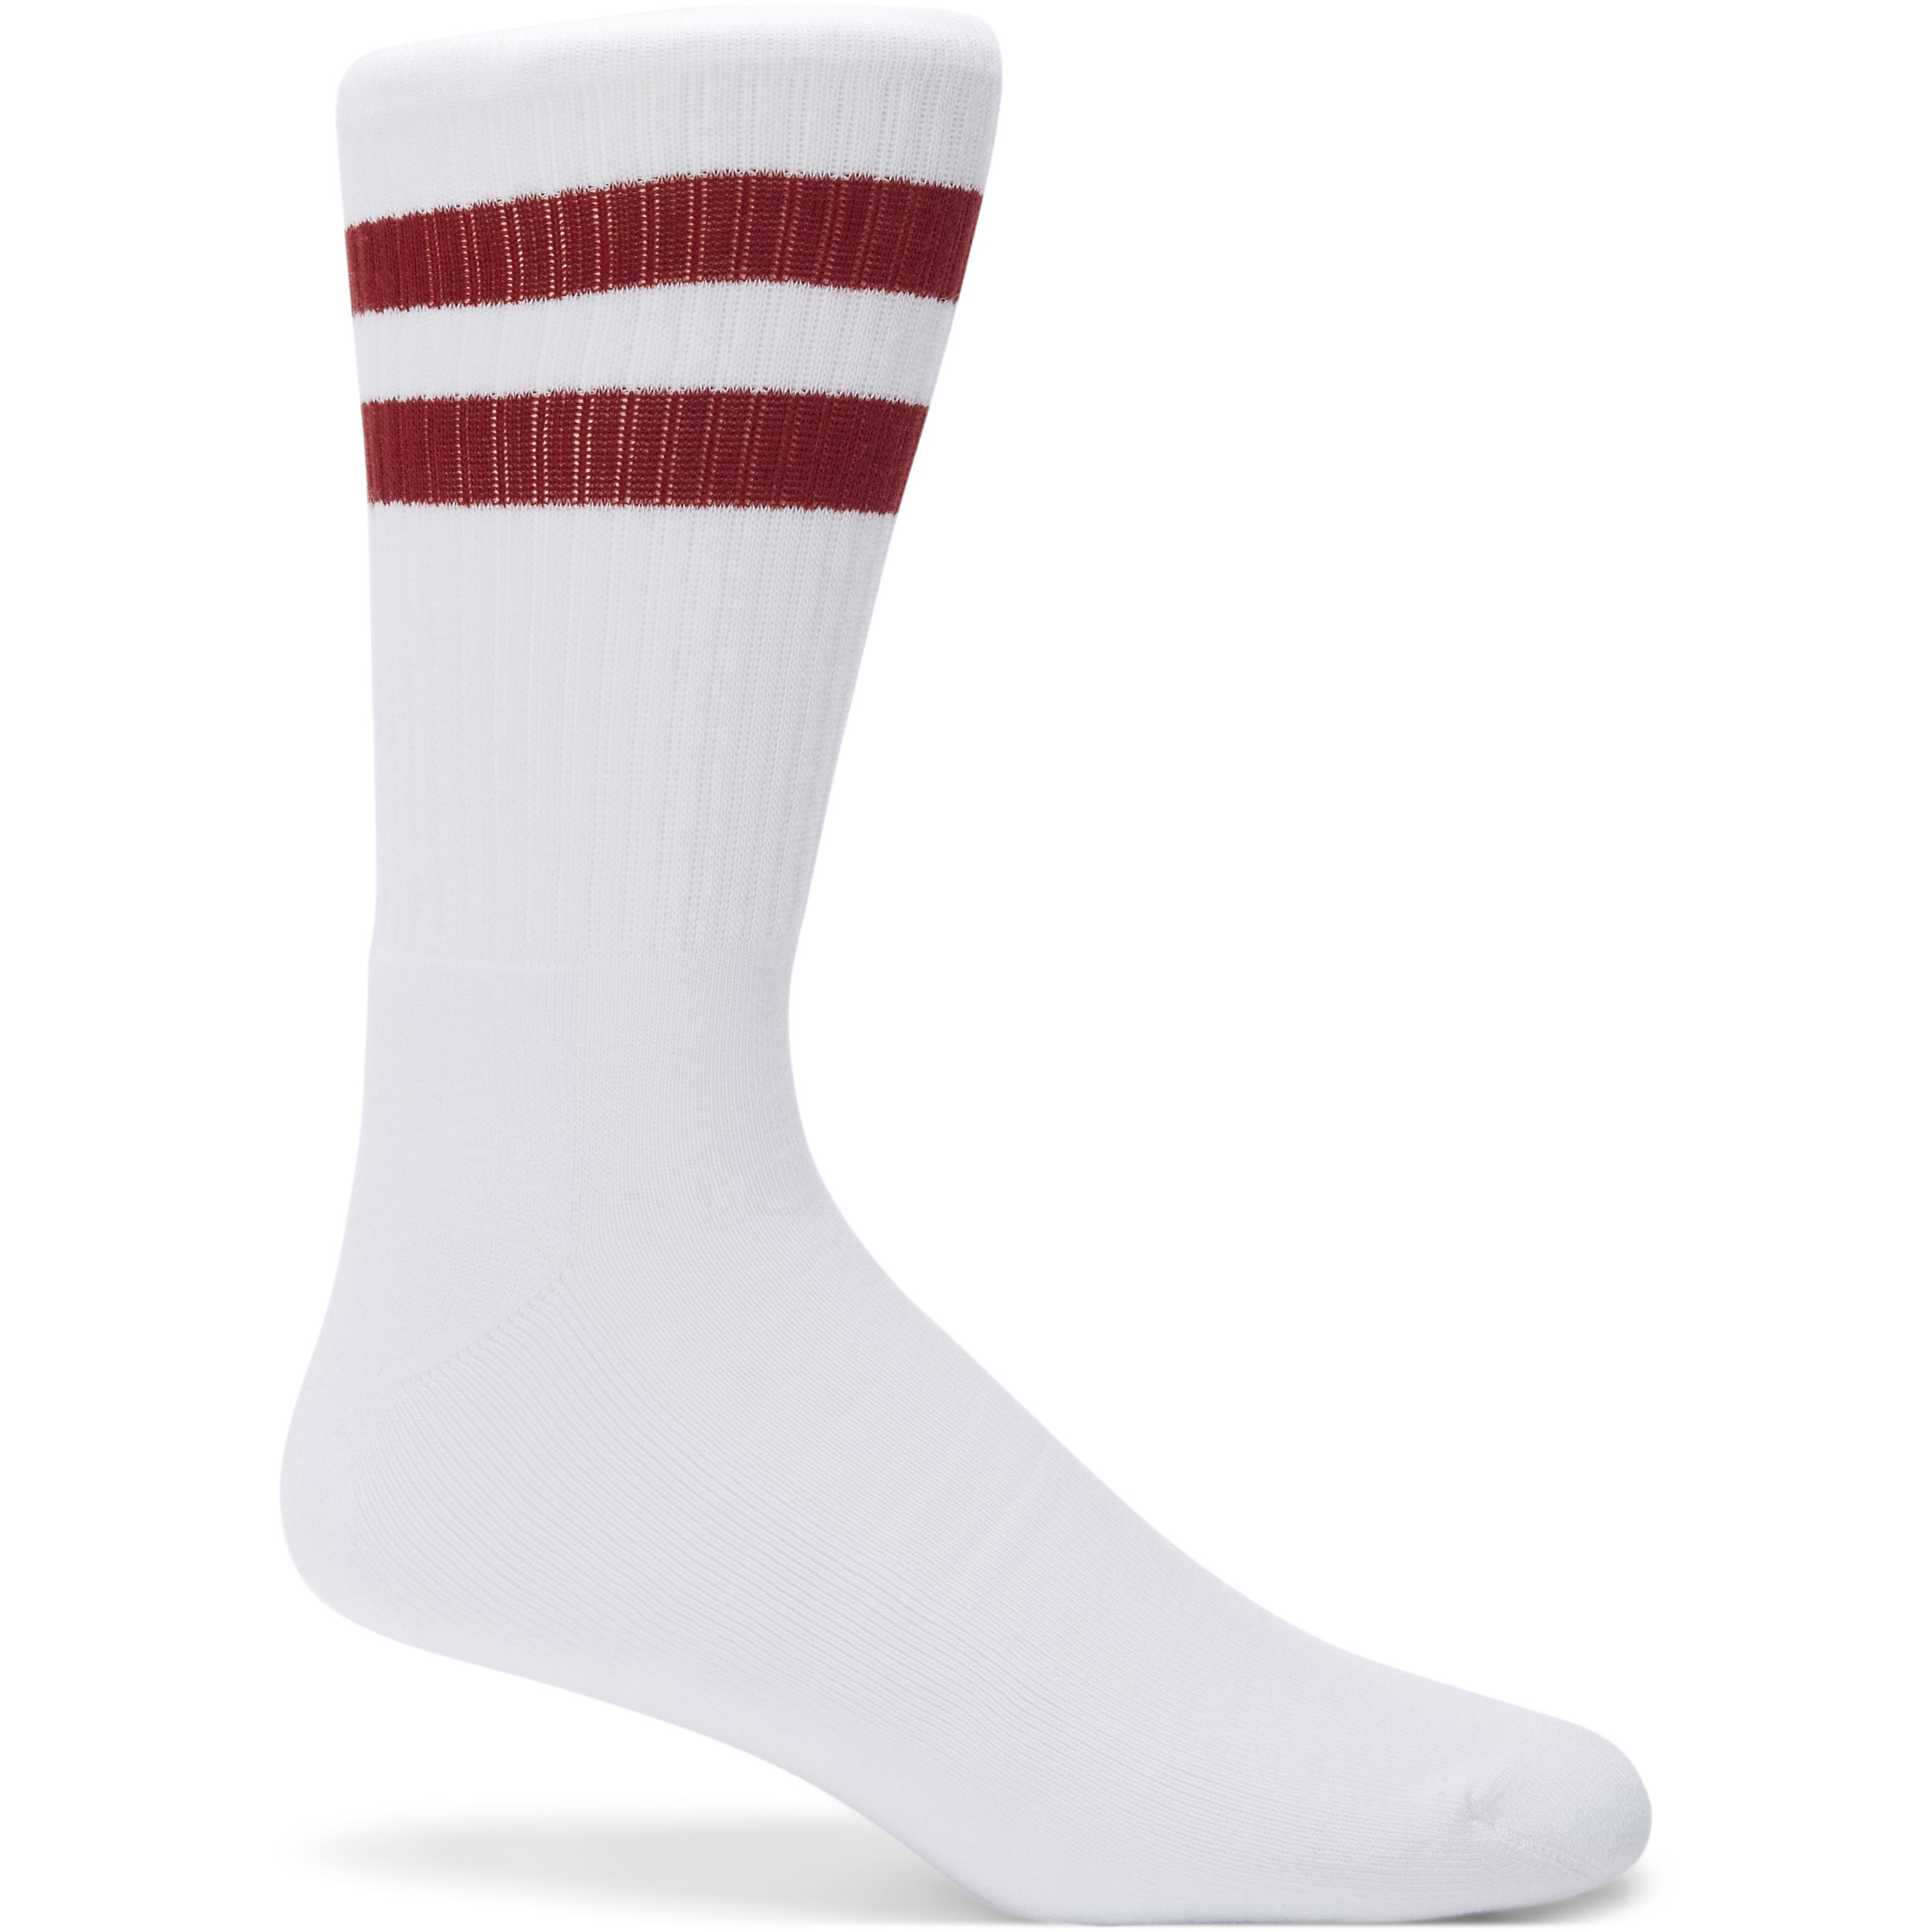 Tennis Socks - Socks - White